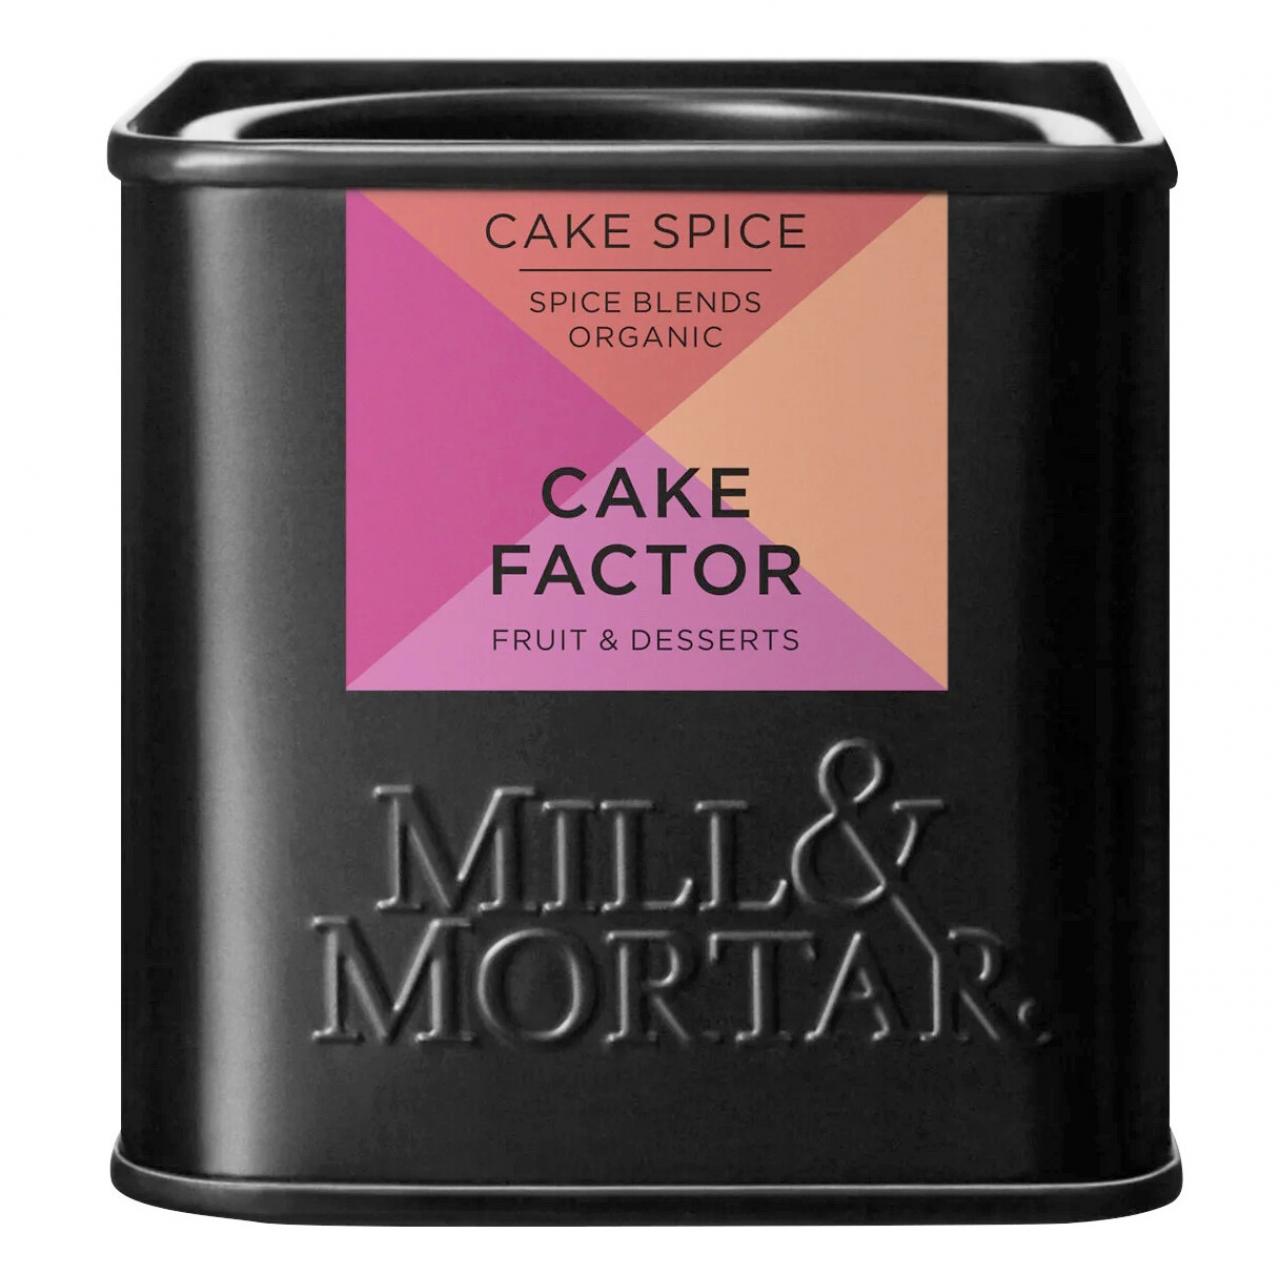 Cake Factor is een kruidenmix voor gebak met kaneel, steranijs, piment, gember, kruidnagel en nootmuskaat - € 8,40 - Mill & Mortar  via goodfoodshop.be.